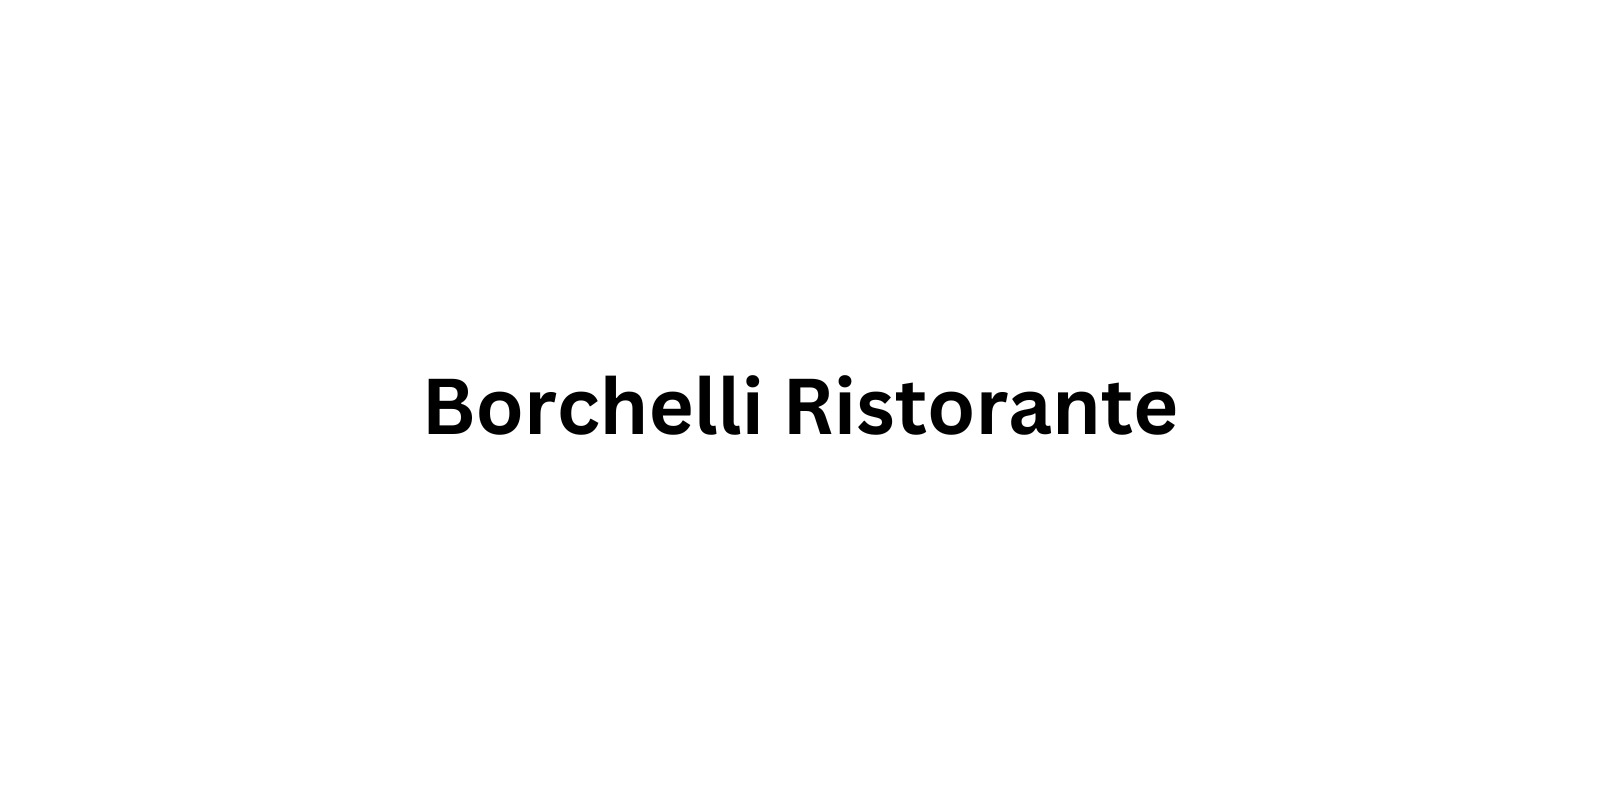 borchelli ristorante menu prices